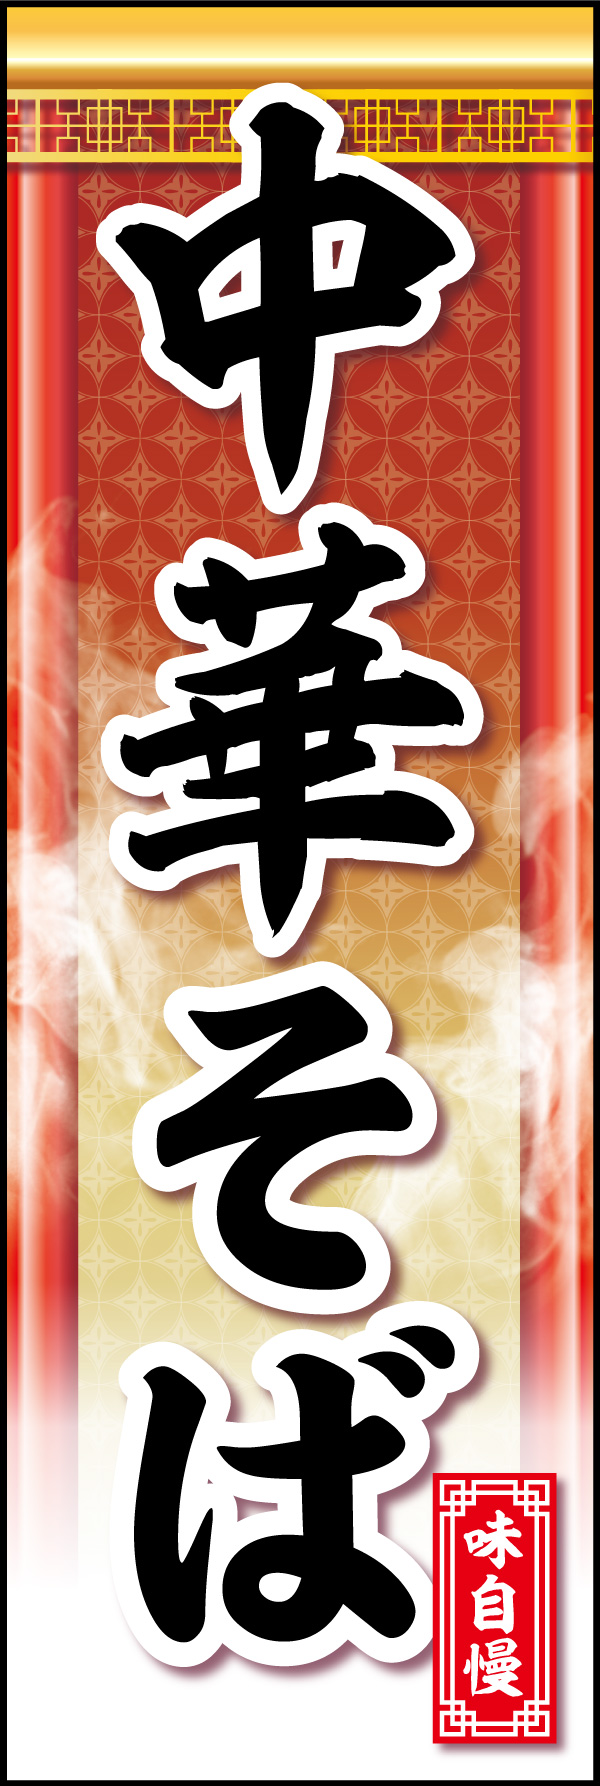 中華そば 06「中華そば」ののぼりです。中華風装飾で品のある中華そばを表現してみました。(Y.M) 